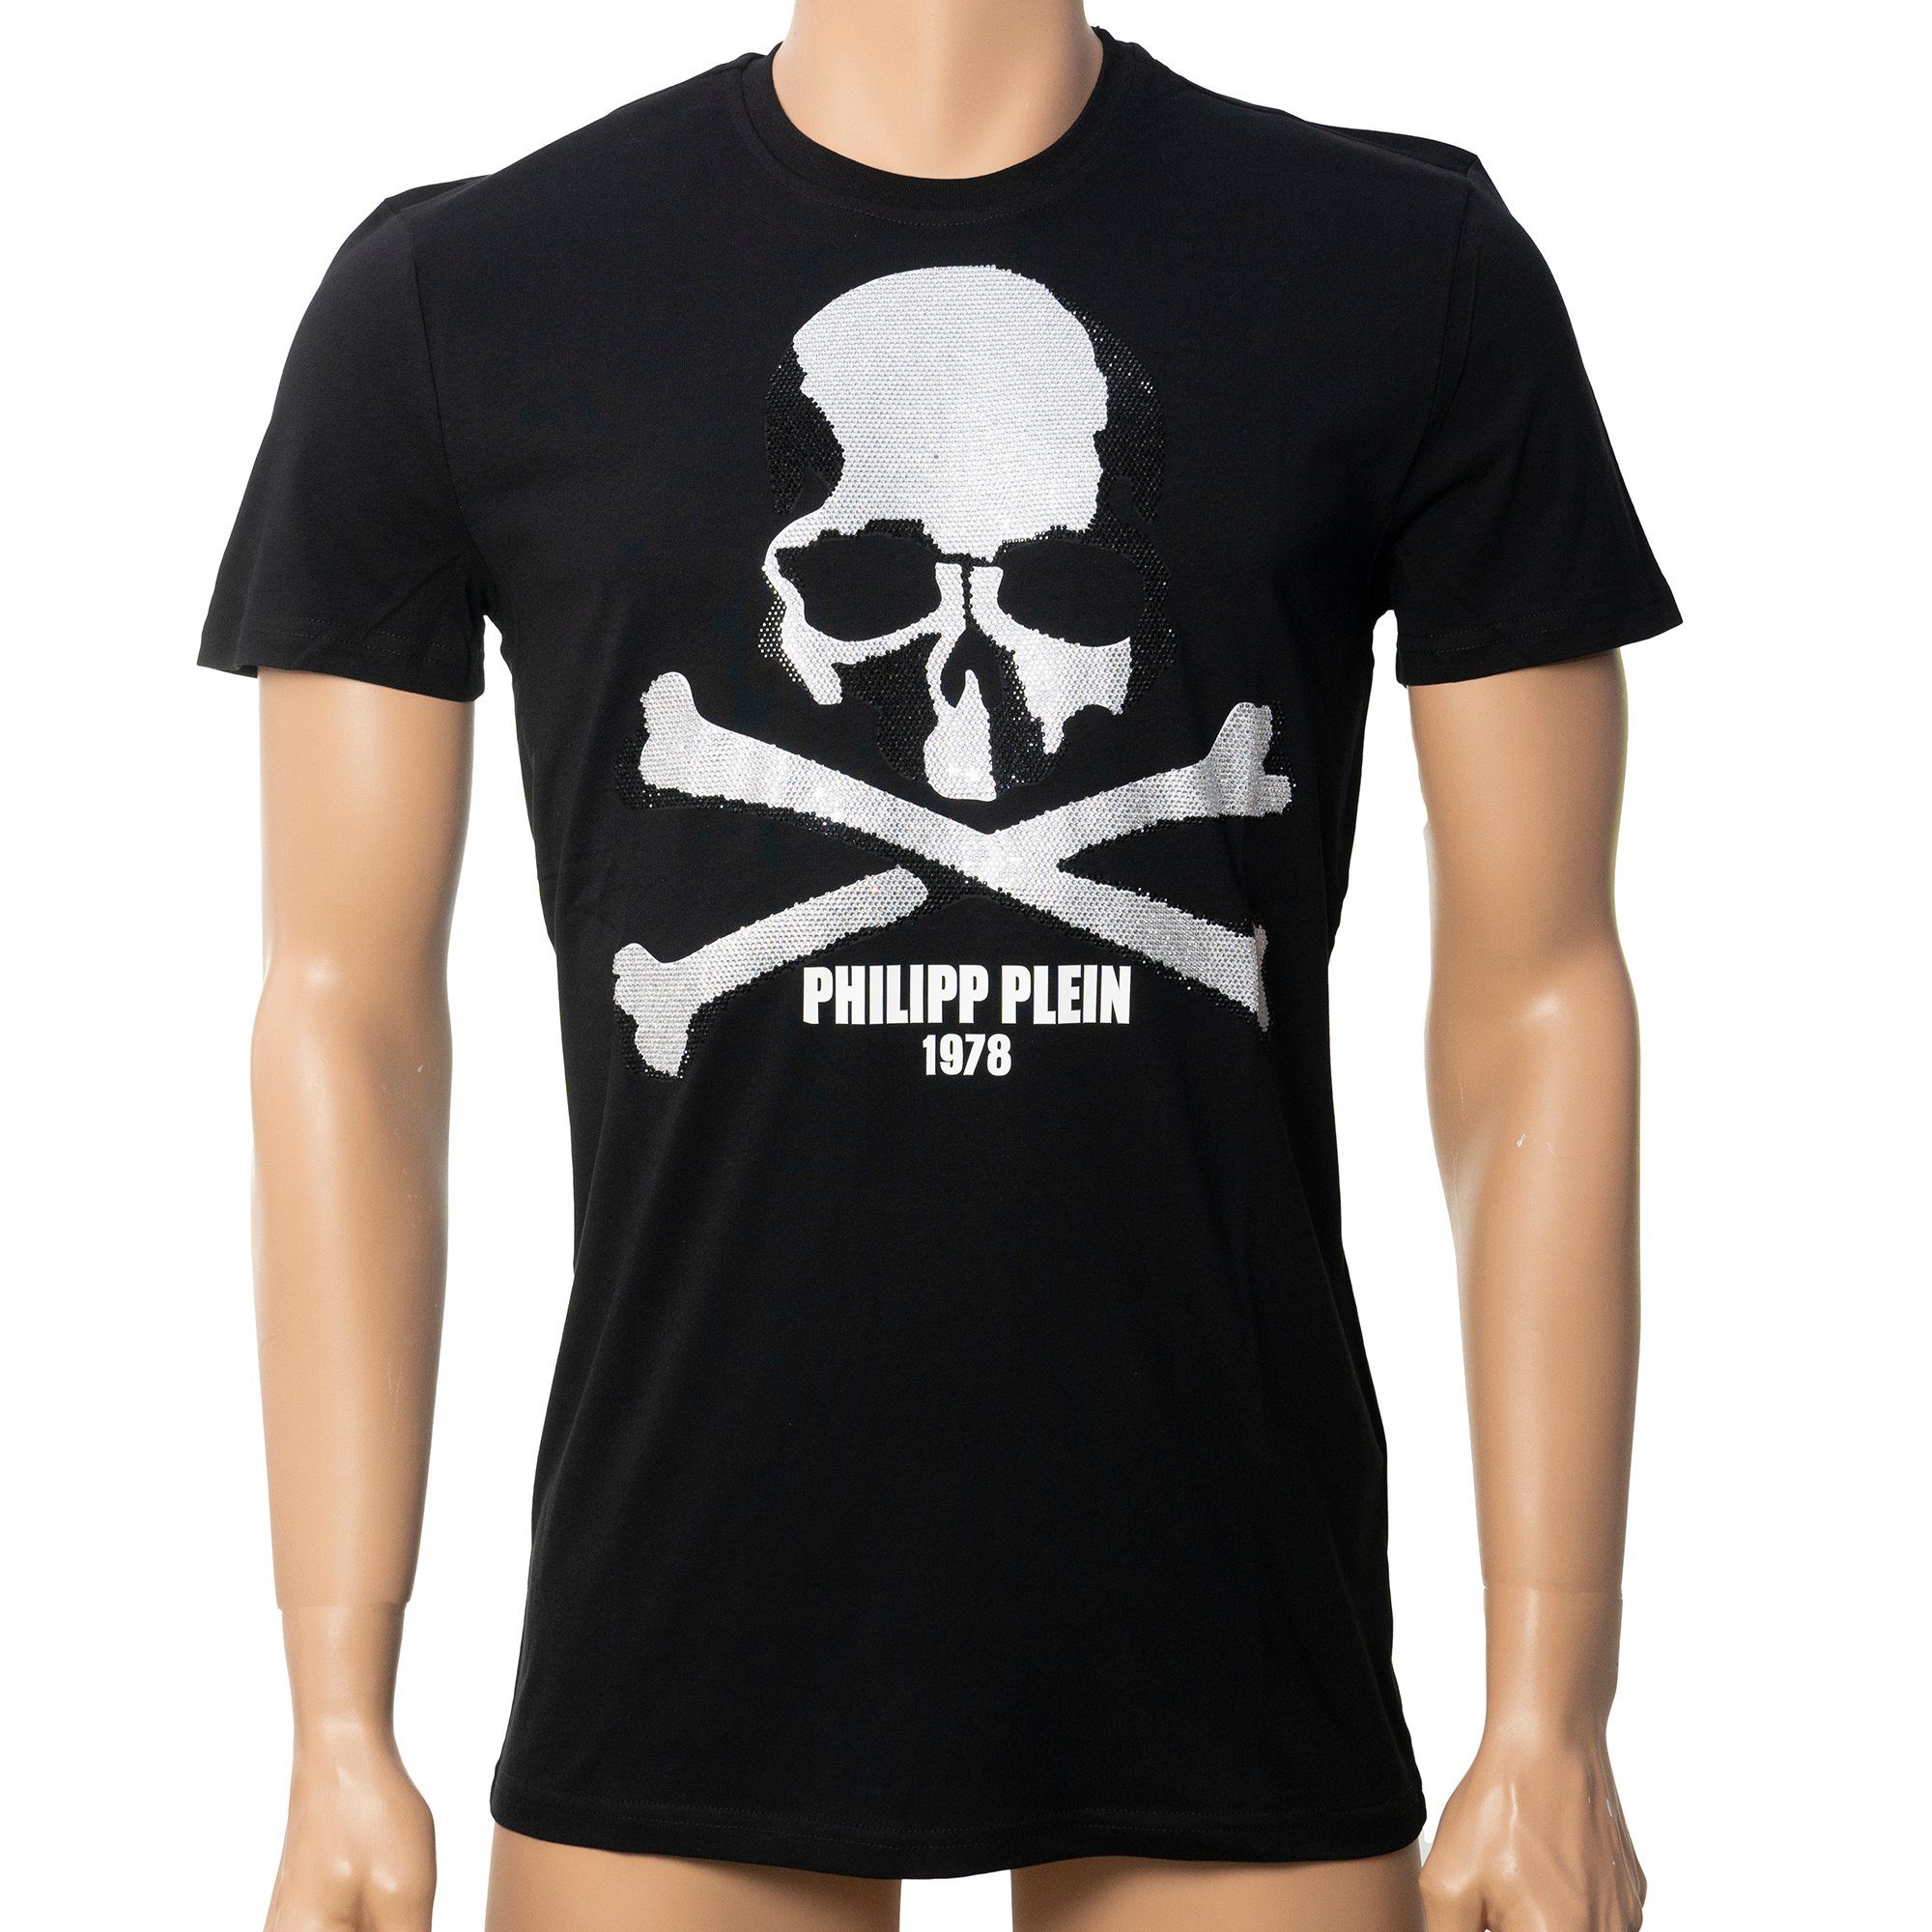 PHILIPP PLEIN T-Shirt Skull strass Schwarz mit Strasssteinen im  Totenkopfdesign